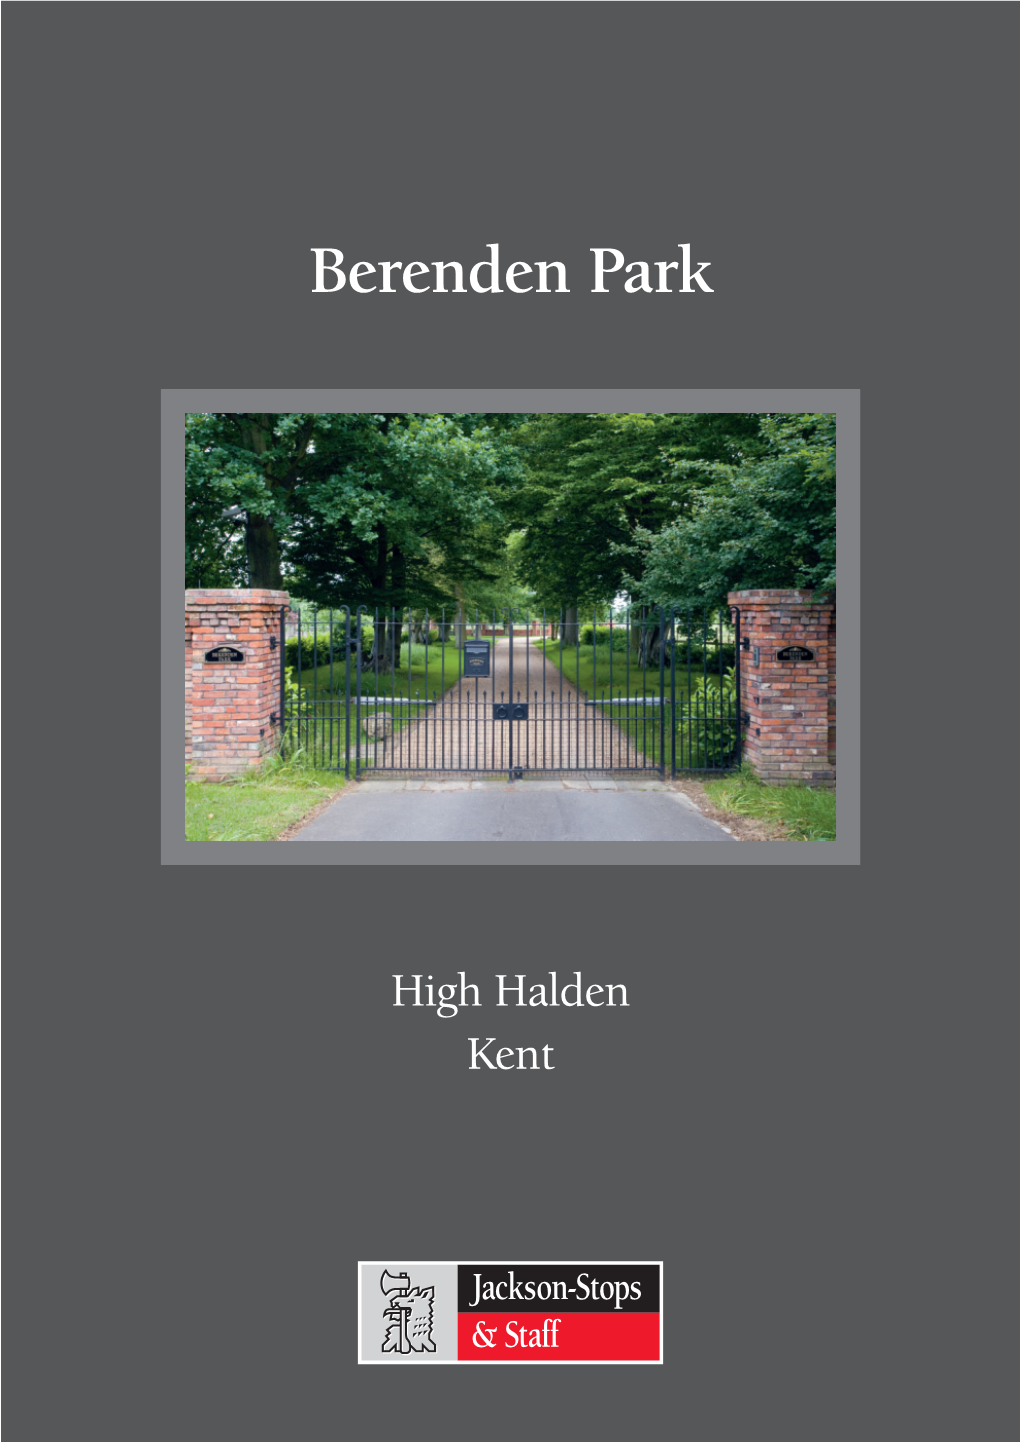 Berenden Park